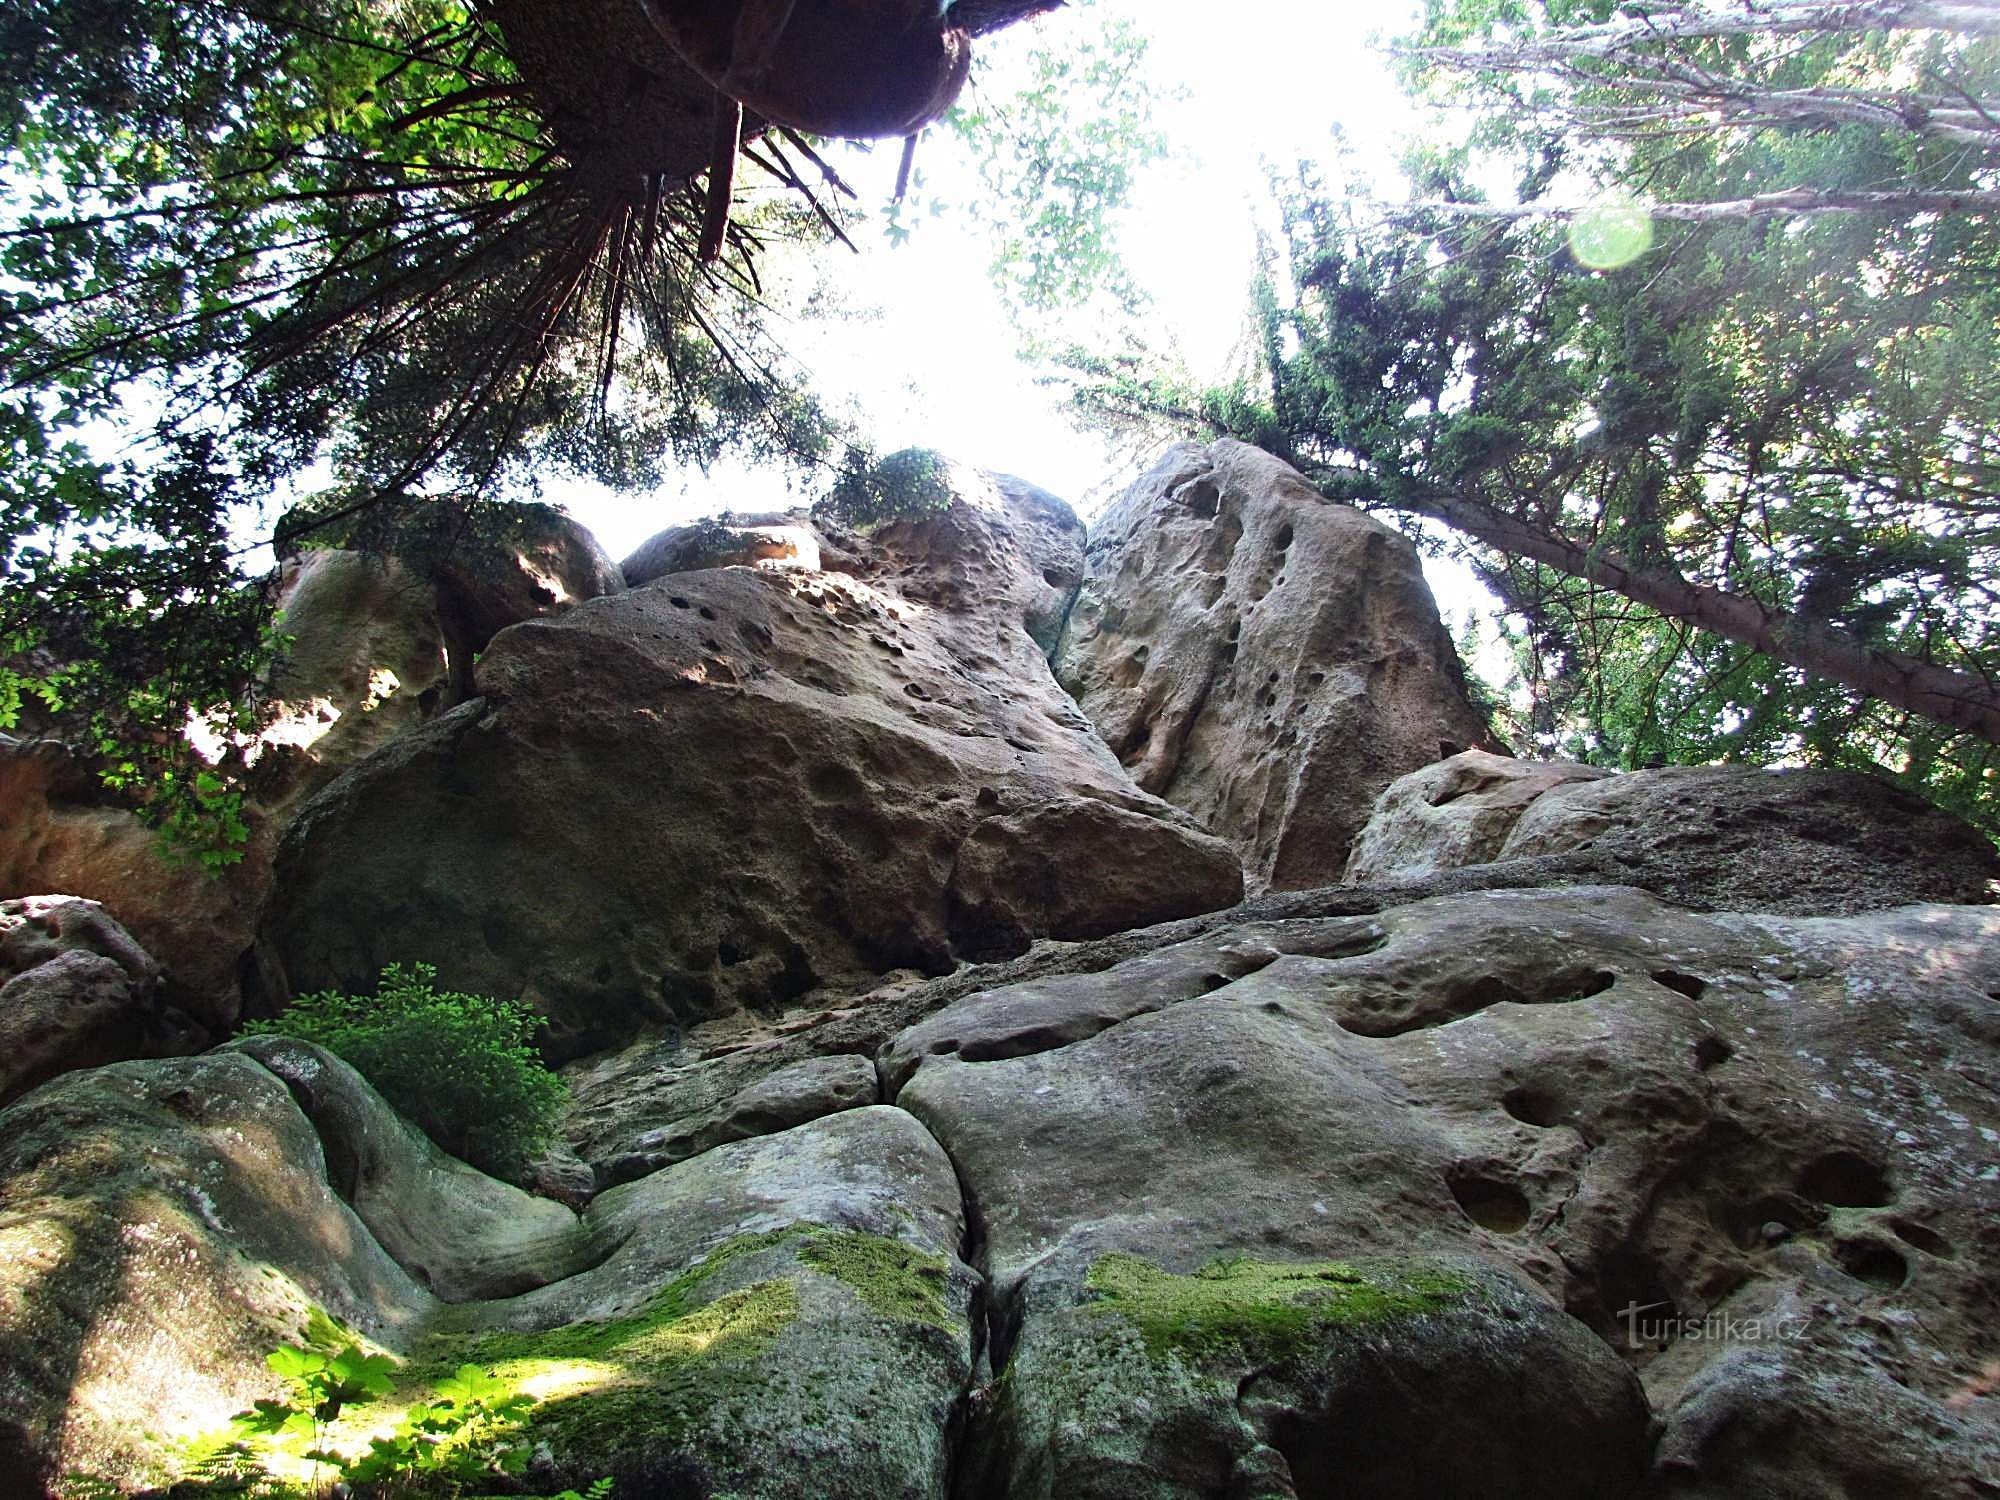 关于岩石和人......或对 Pulčín 岩石的忏悔